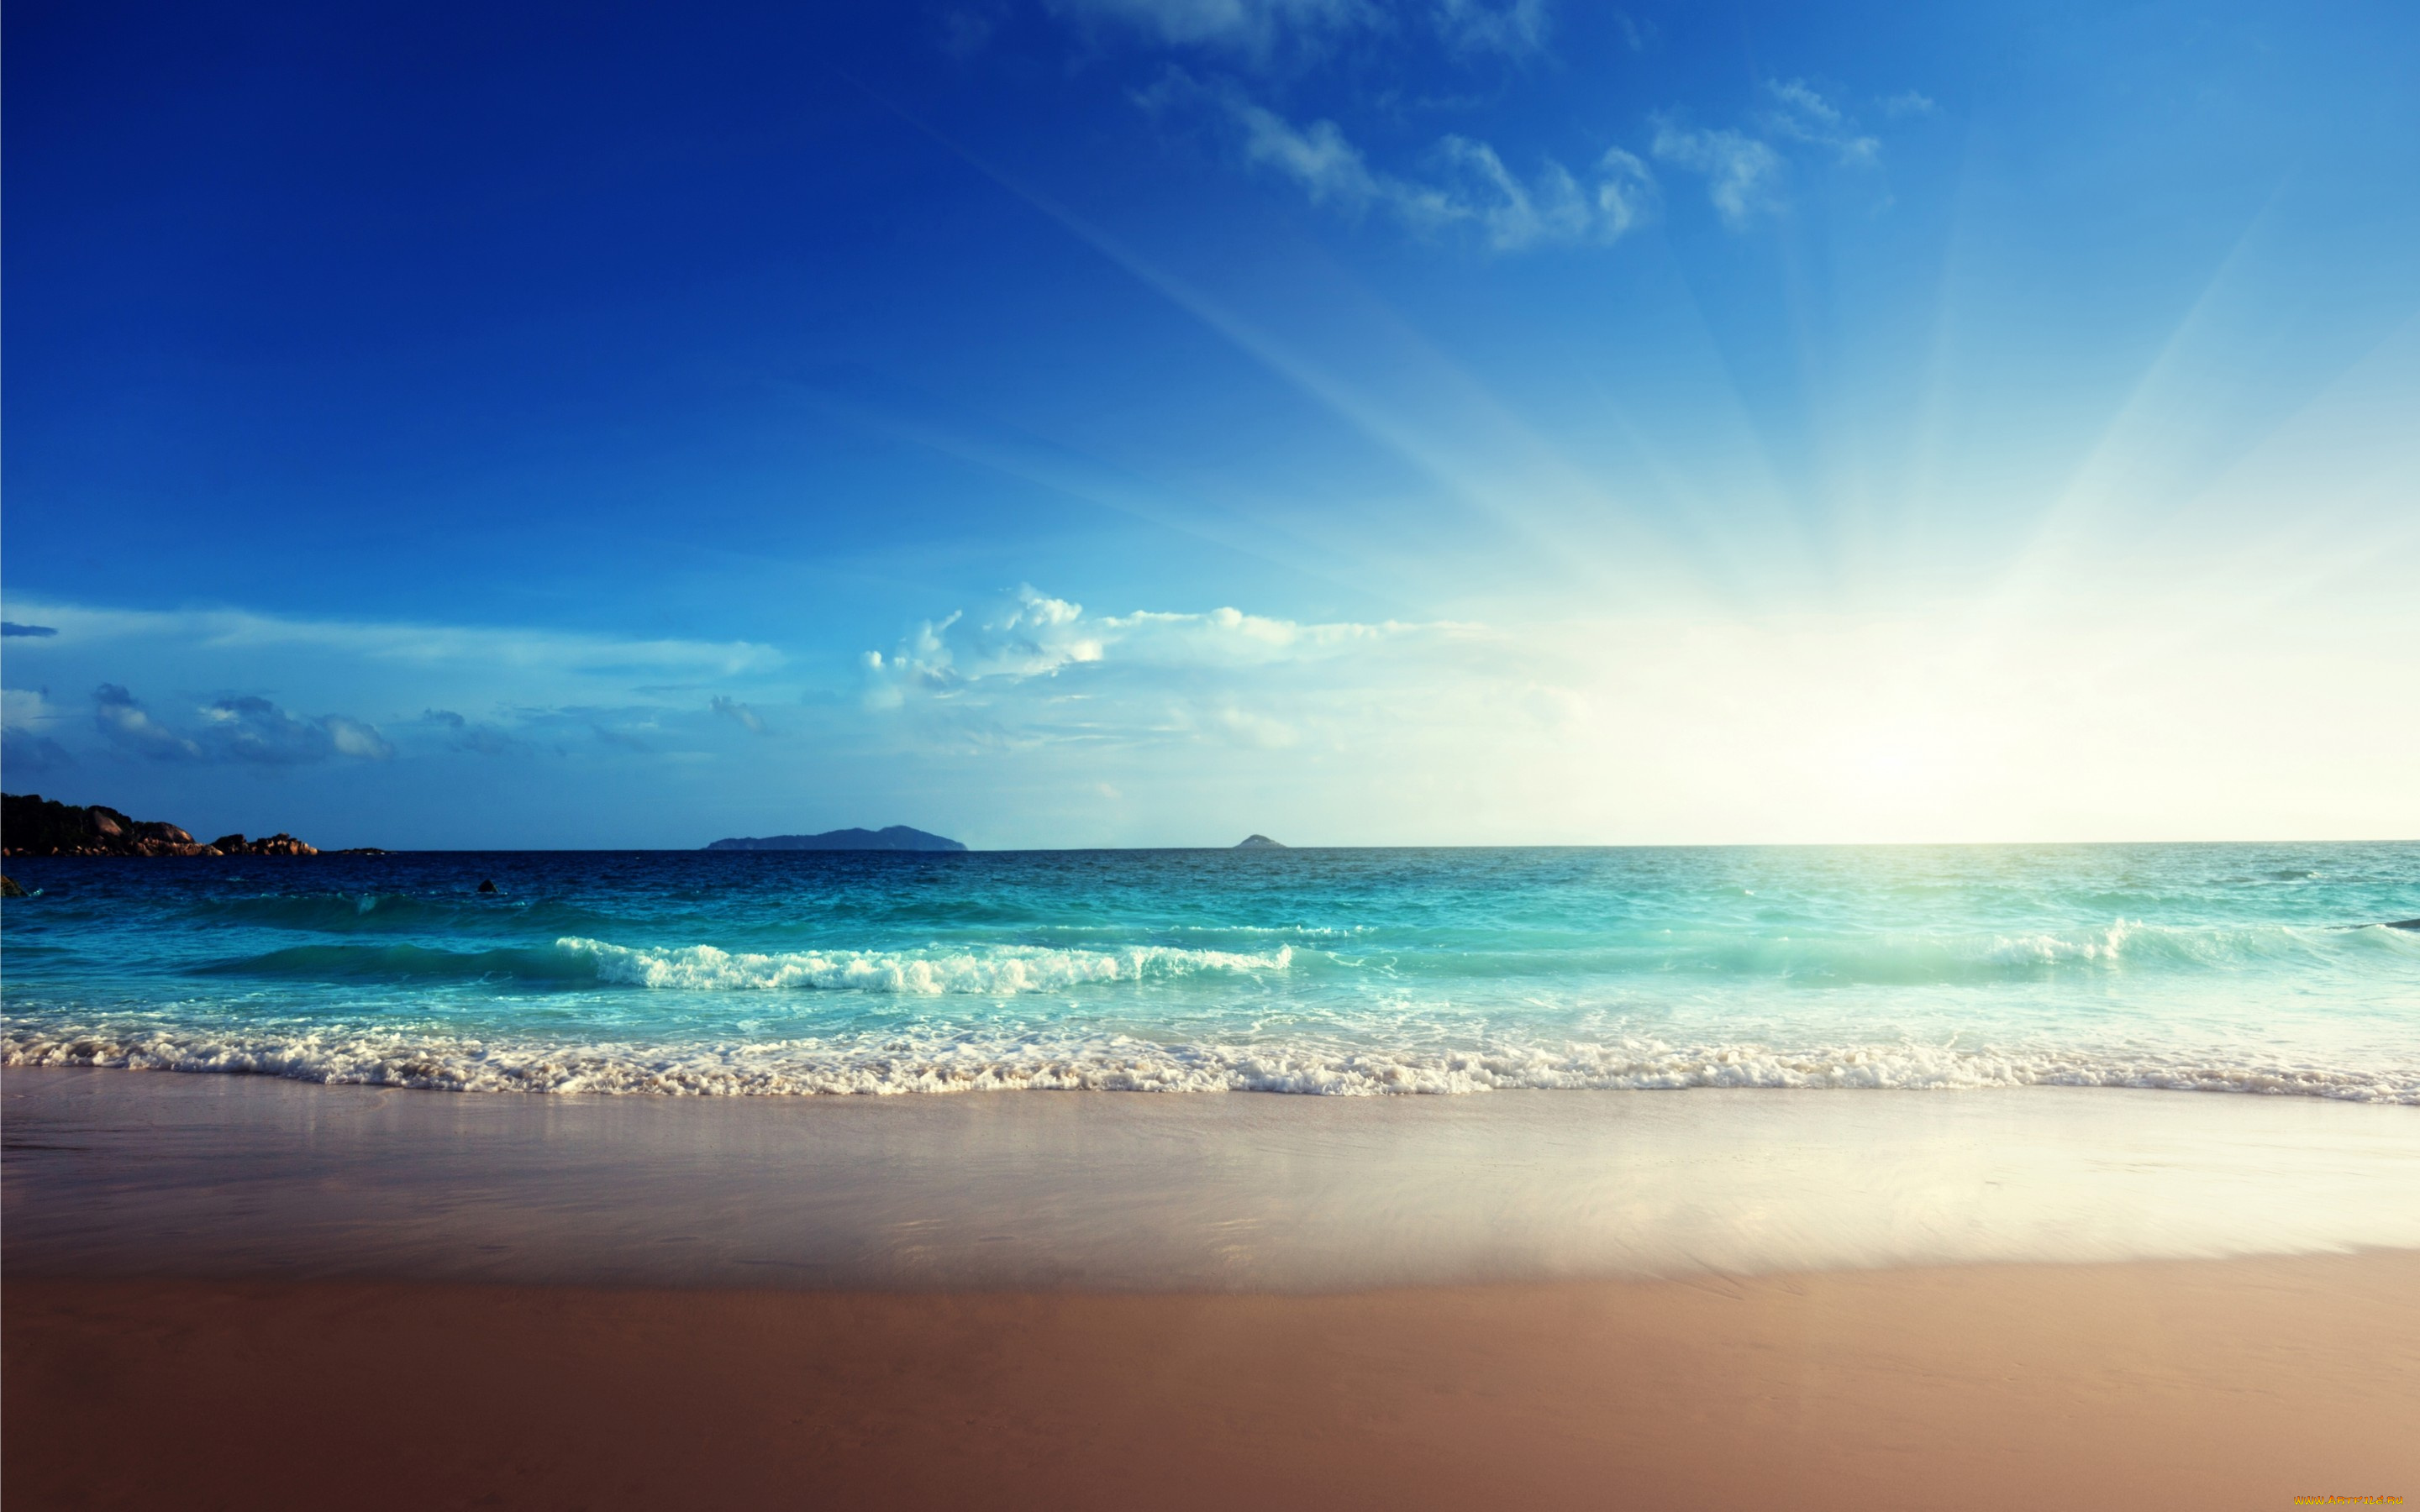 природа, моря, океаны, emerald, beach, ocean, blue, sea, море, солнце, пляж, песок, sand, sunshine